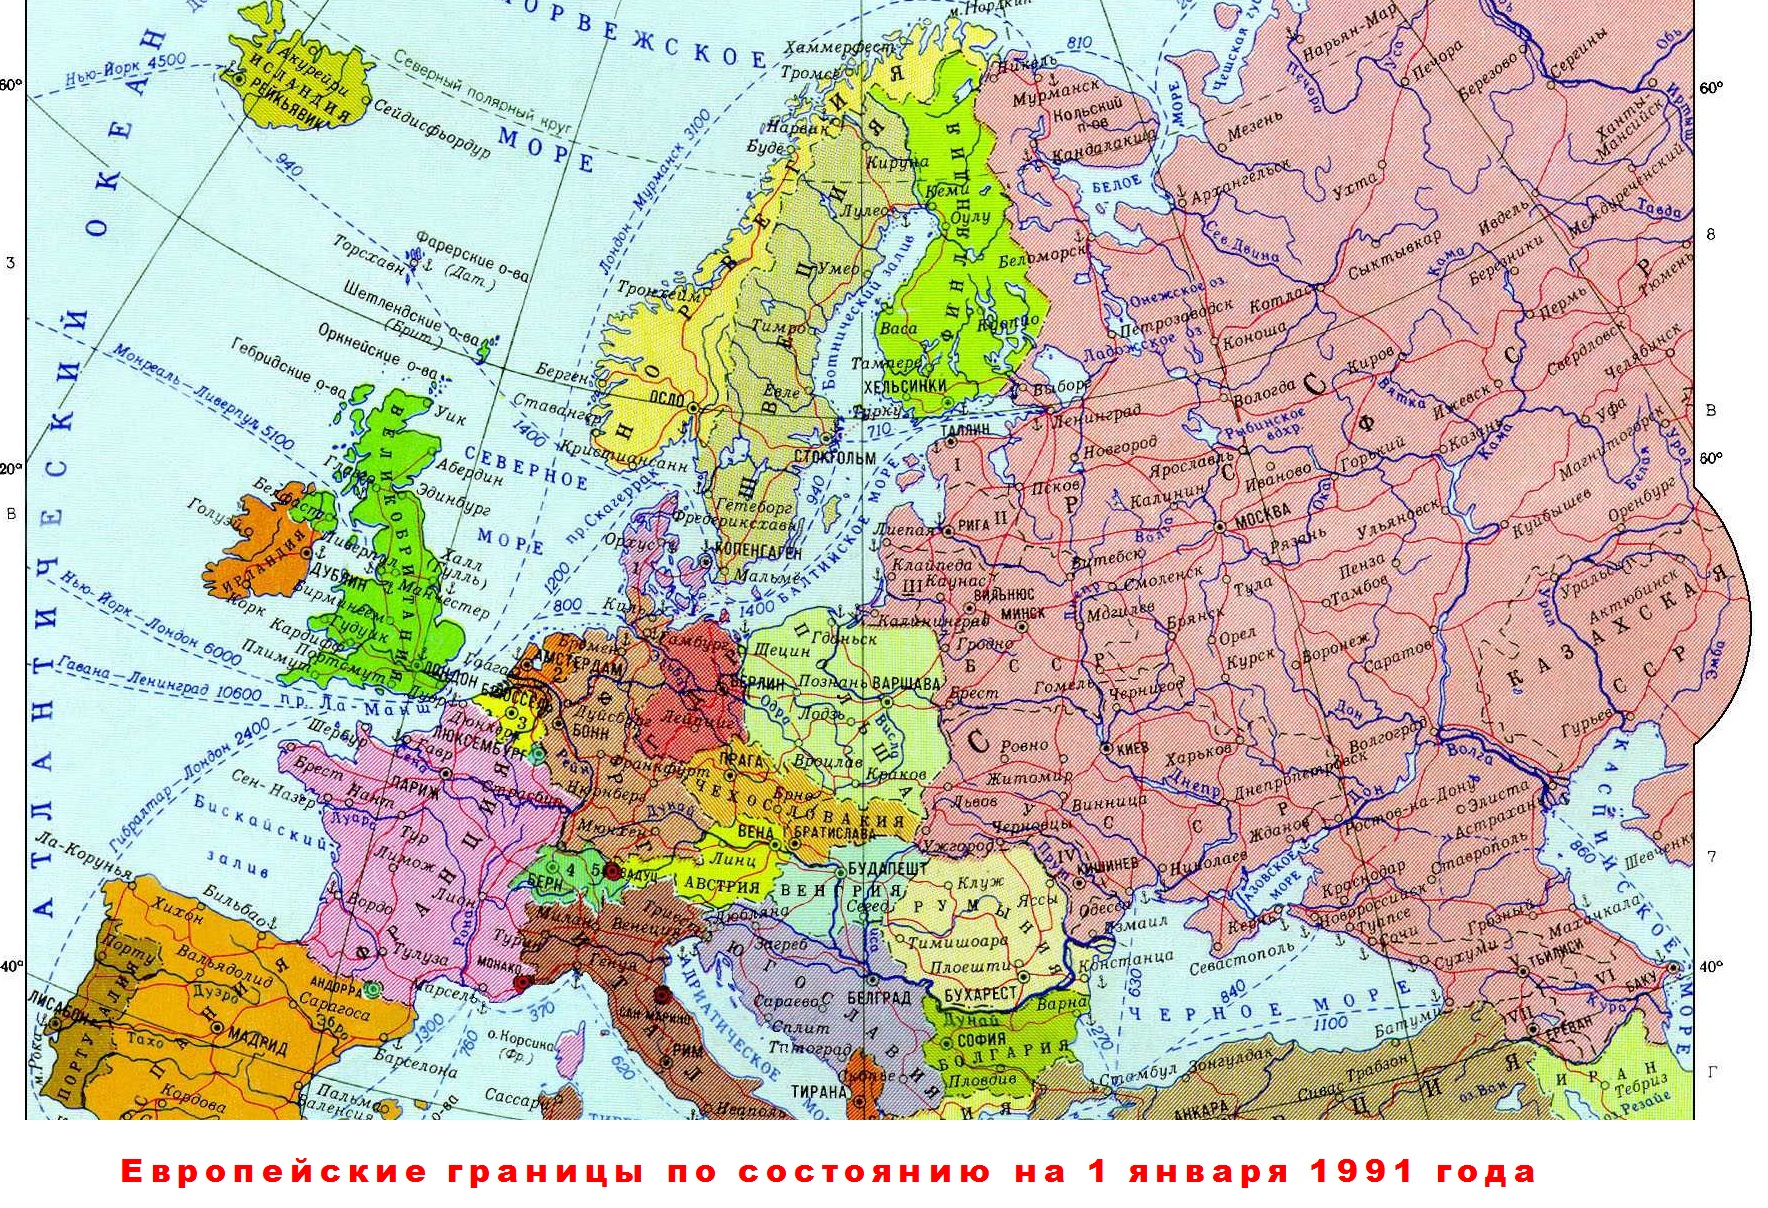 Украина 1991 год карта. Границы 1991 года. Границы Украины 1991. Украинские границы 1991 года. Границы 1991 года на карте.